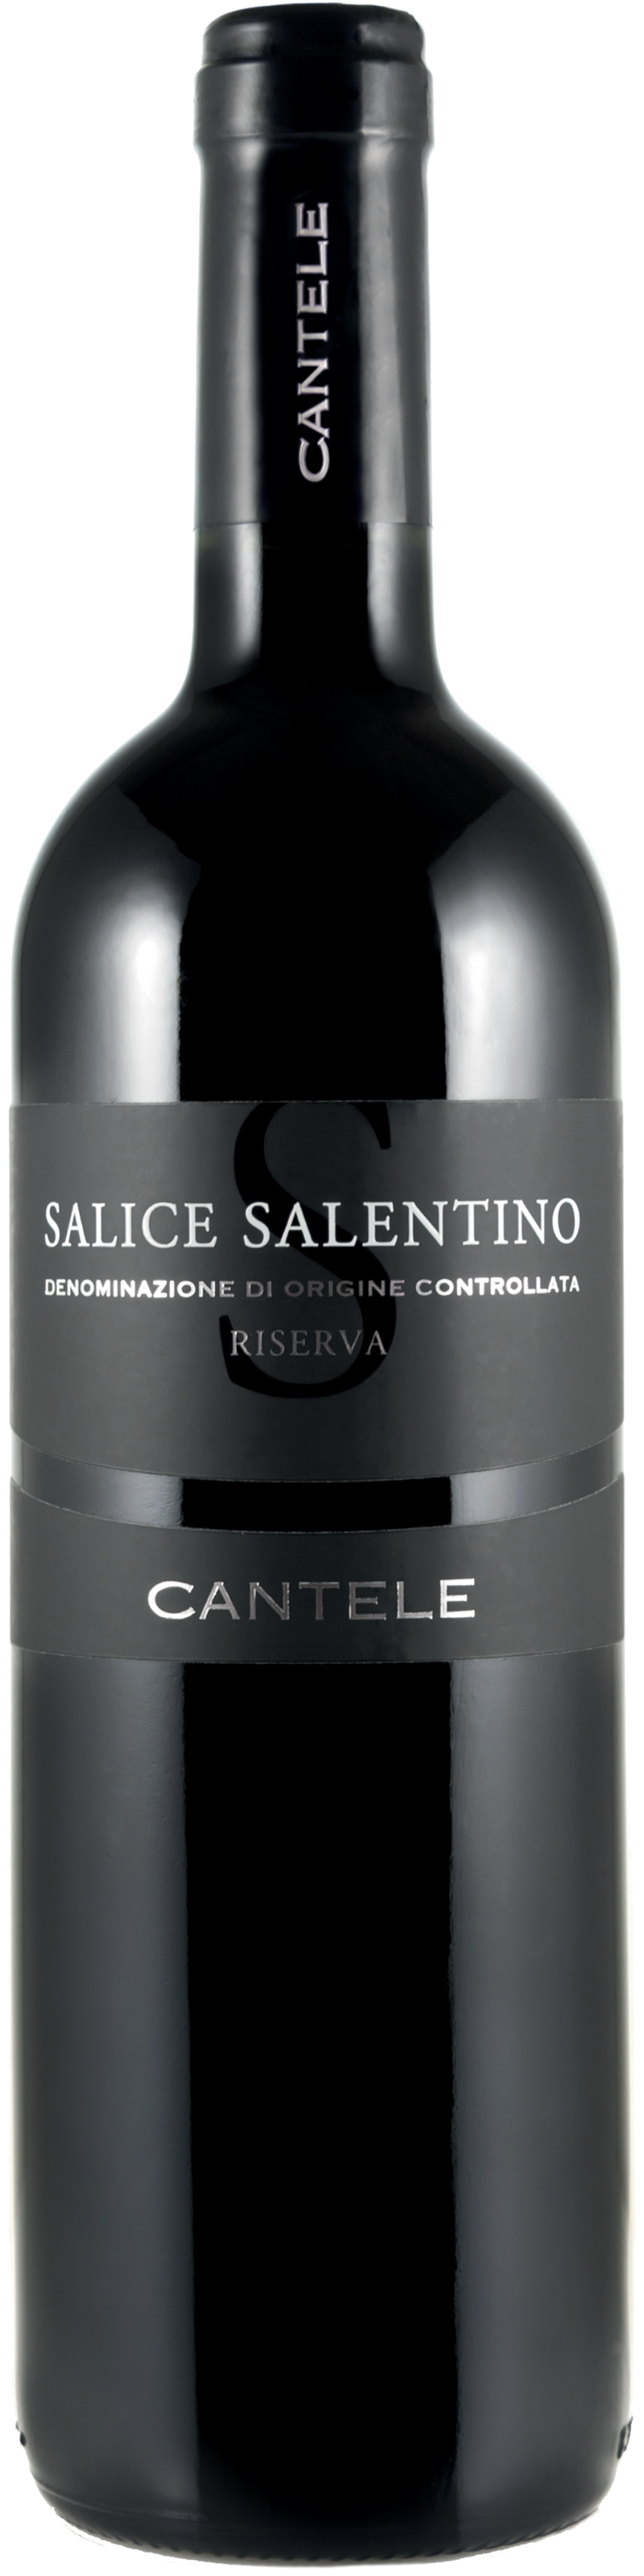 Bottle shot of 2011 Salice Salentino Rosso Riserva